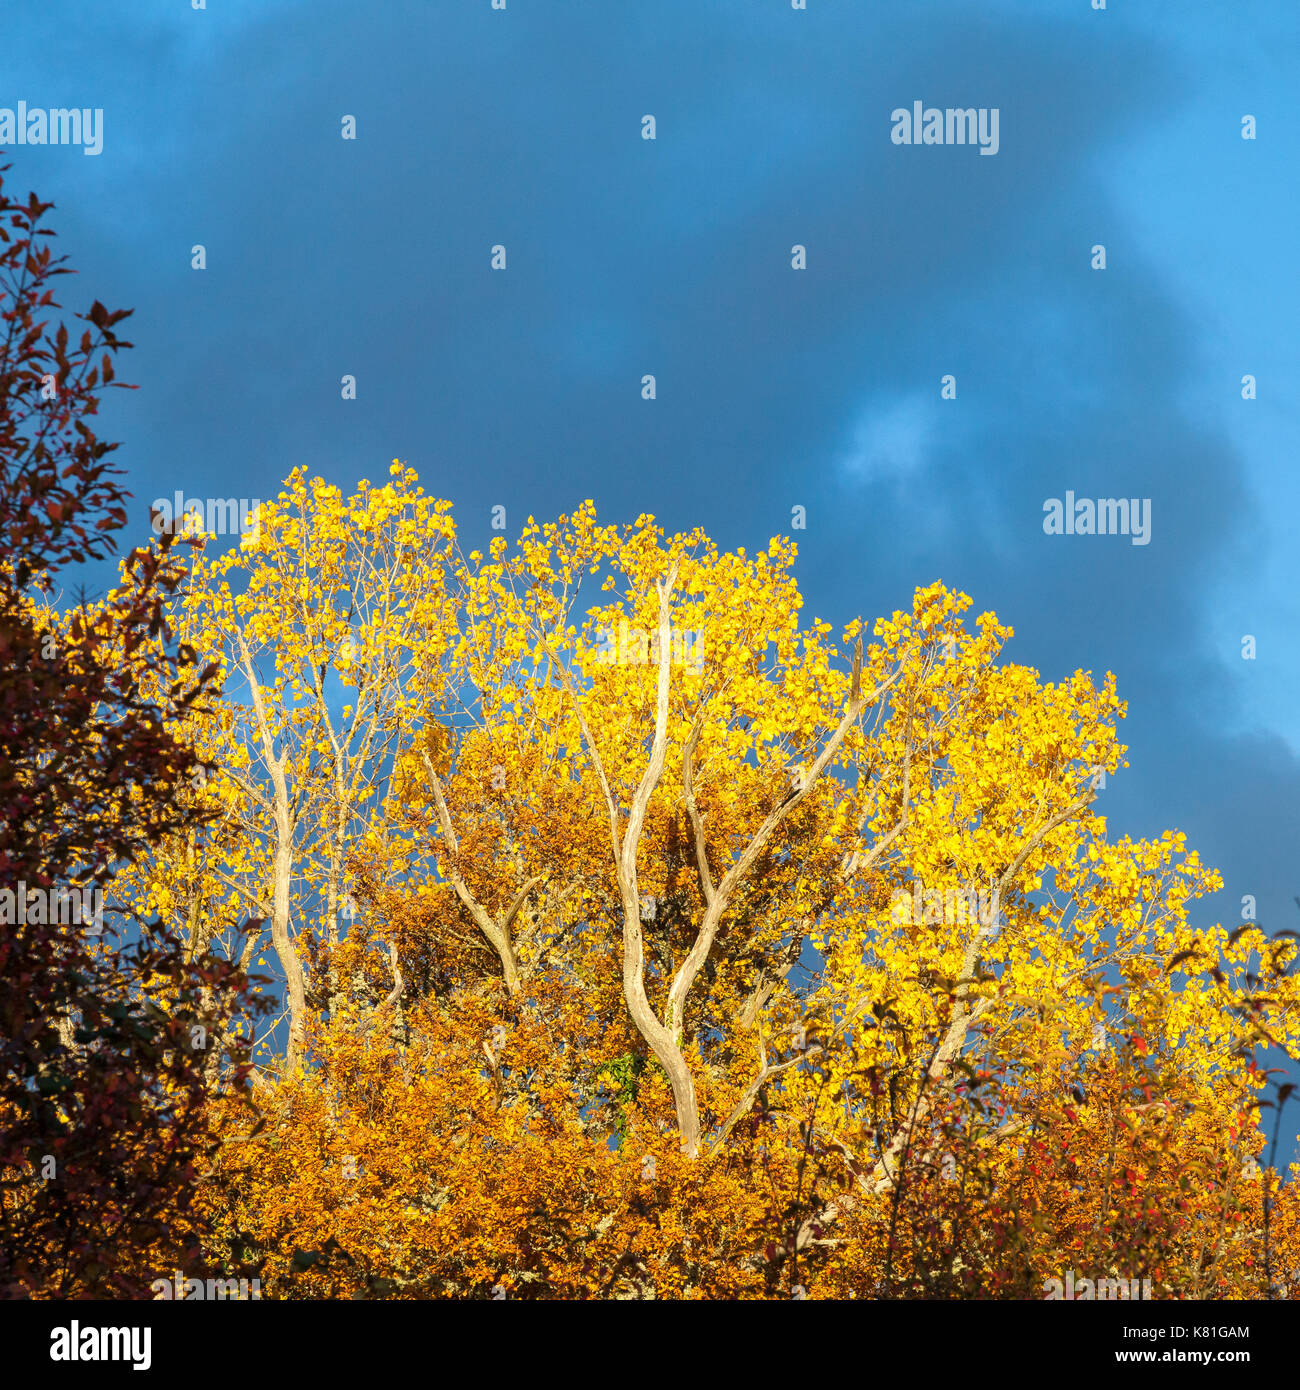 Schönen goldenen Licht auf einen Herbst Baum mit bunten gelbe Blätter im Wald nach einem Gewitter vor einem blauen Himmel mit grauen Wolken Stockfoto